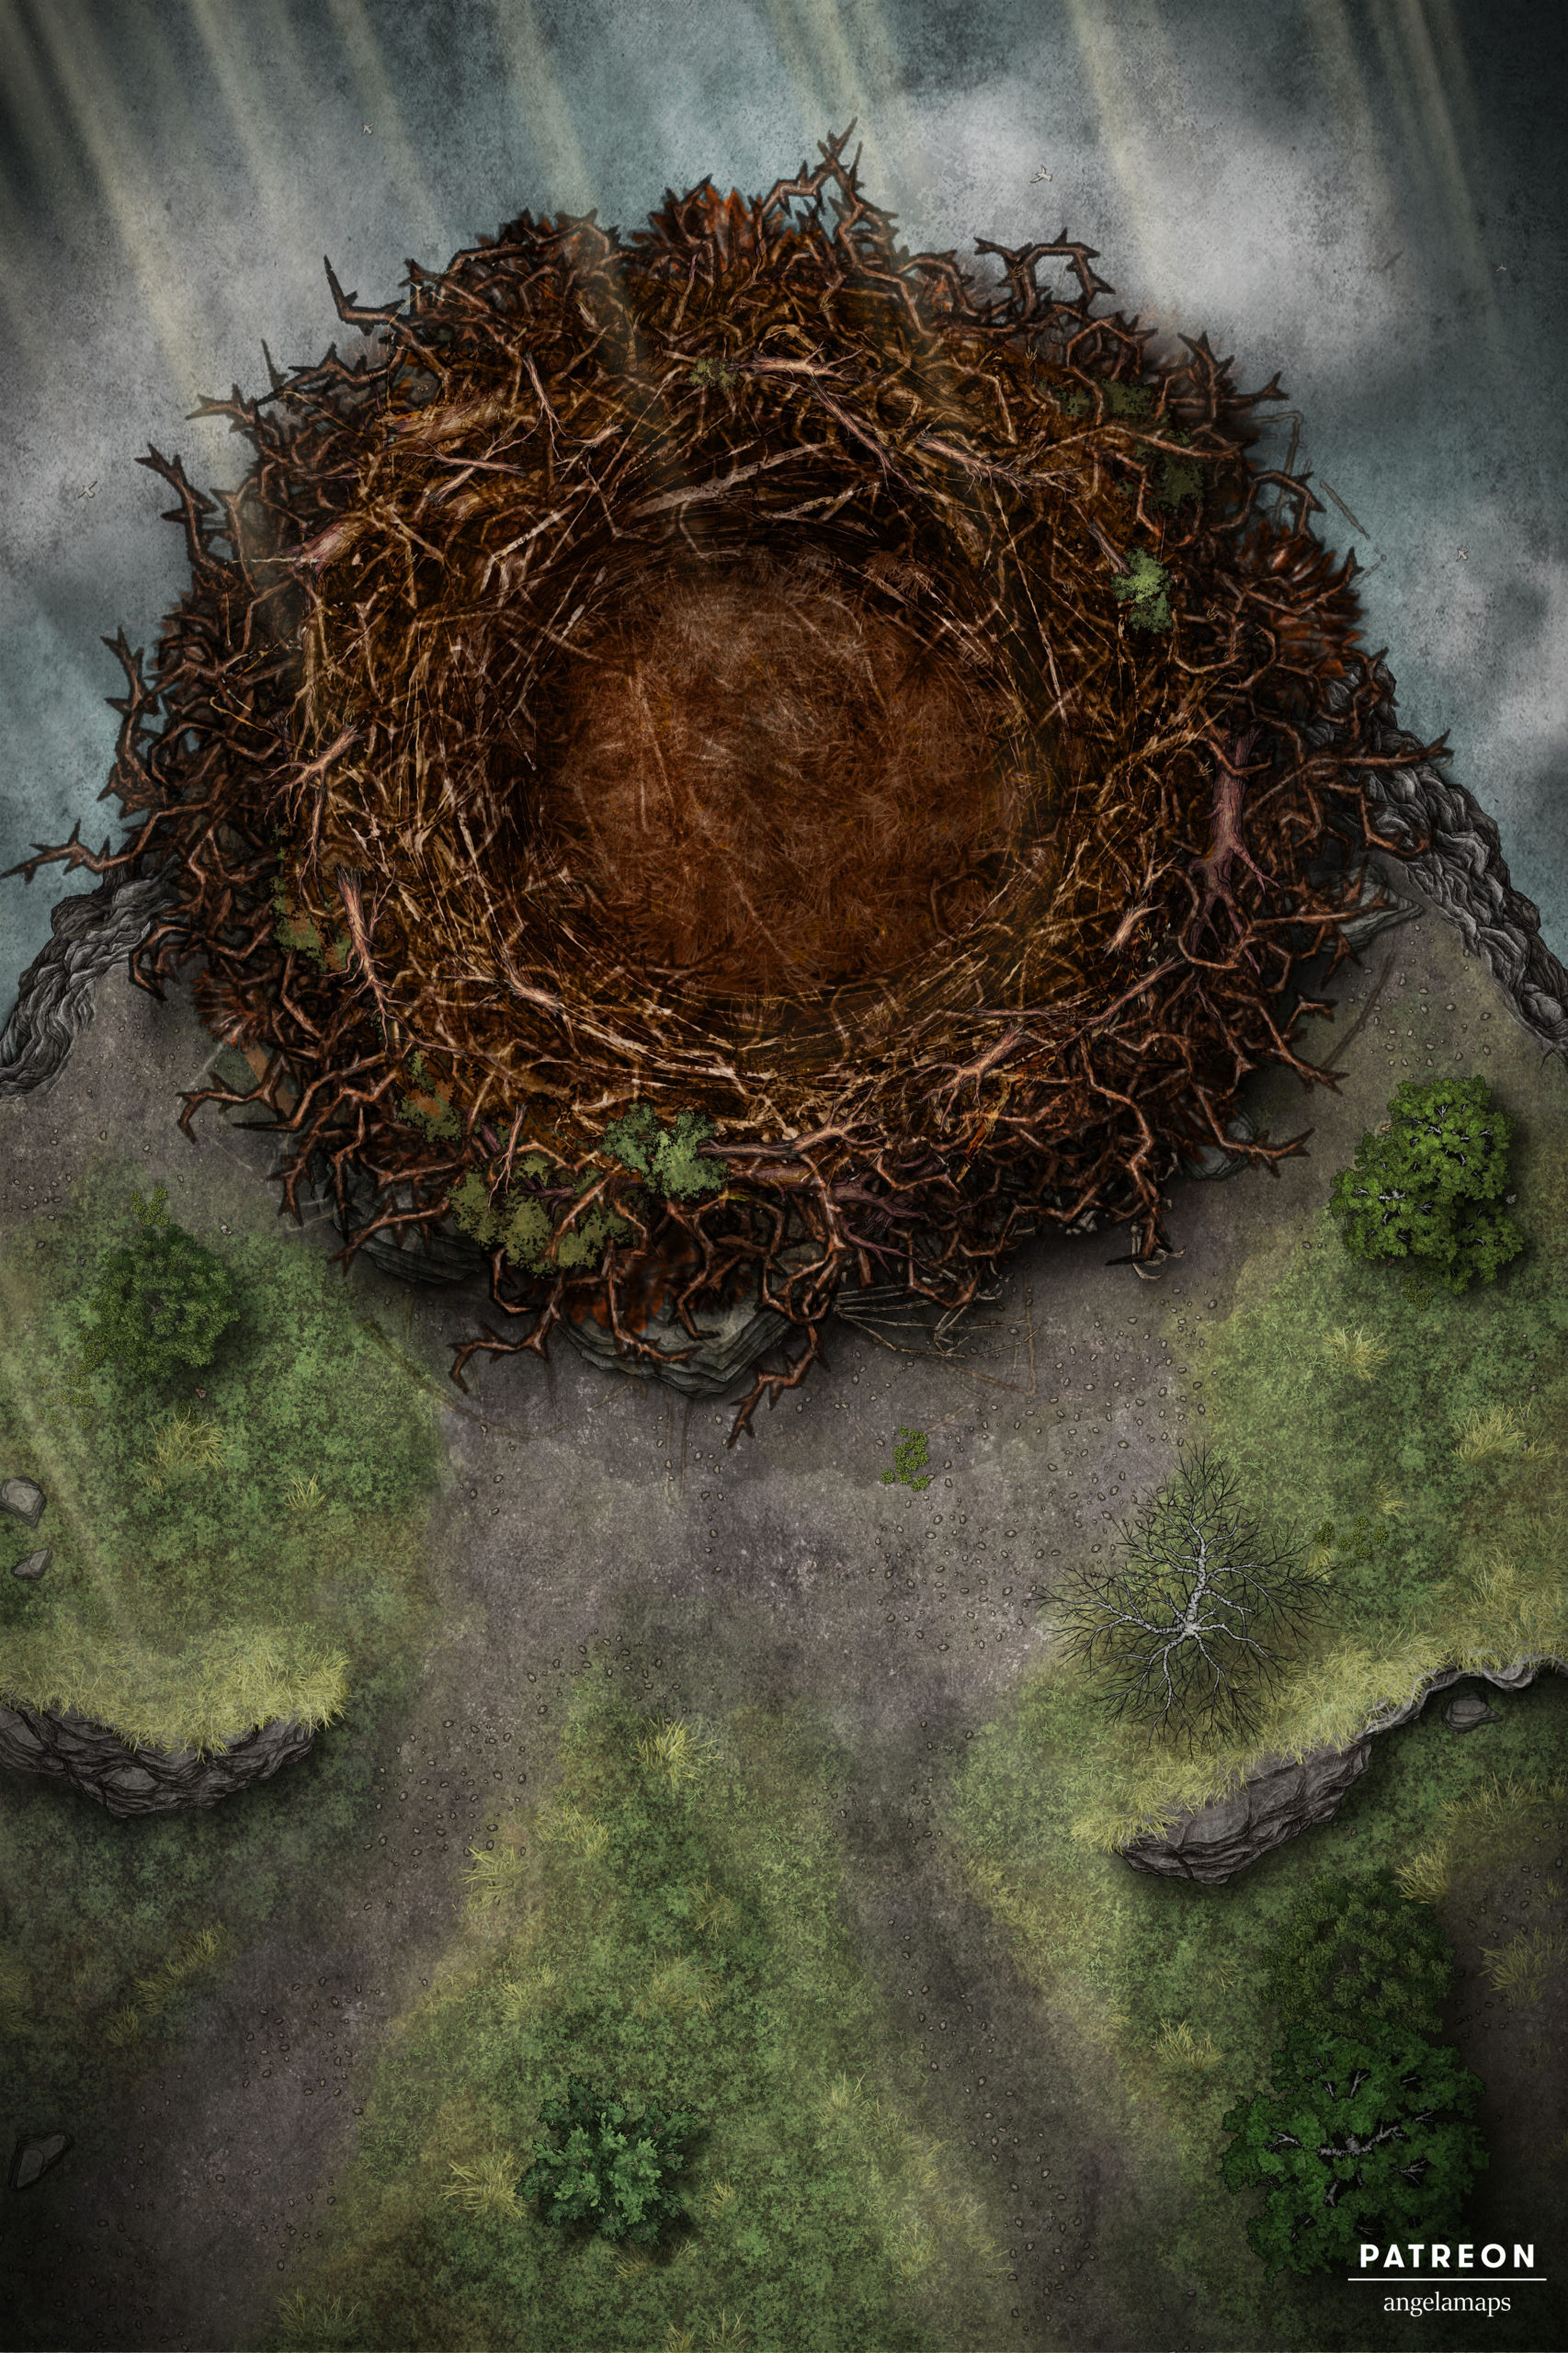 Giant empty nest battle map for TTRPGs